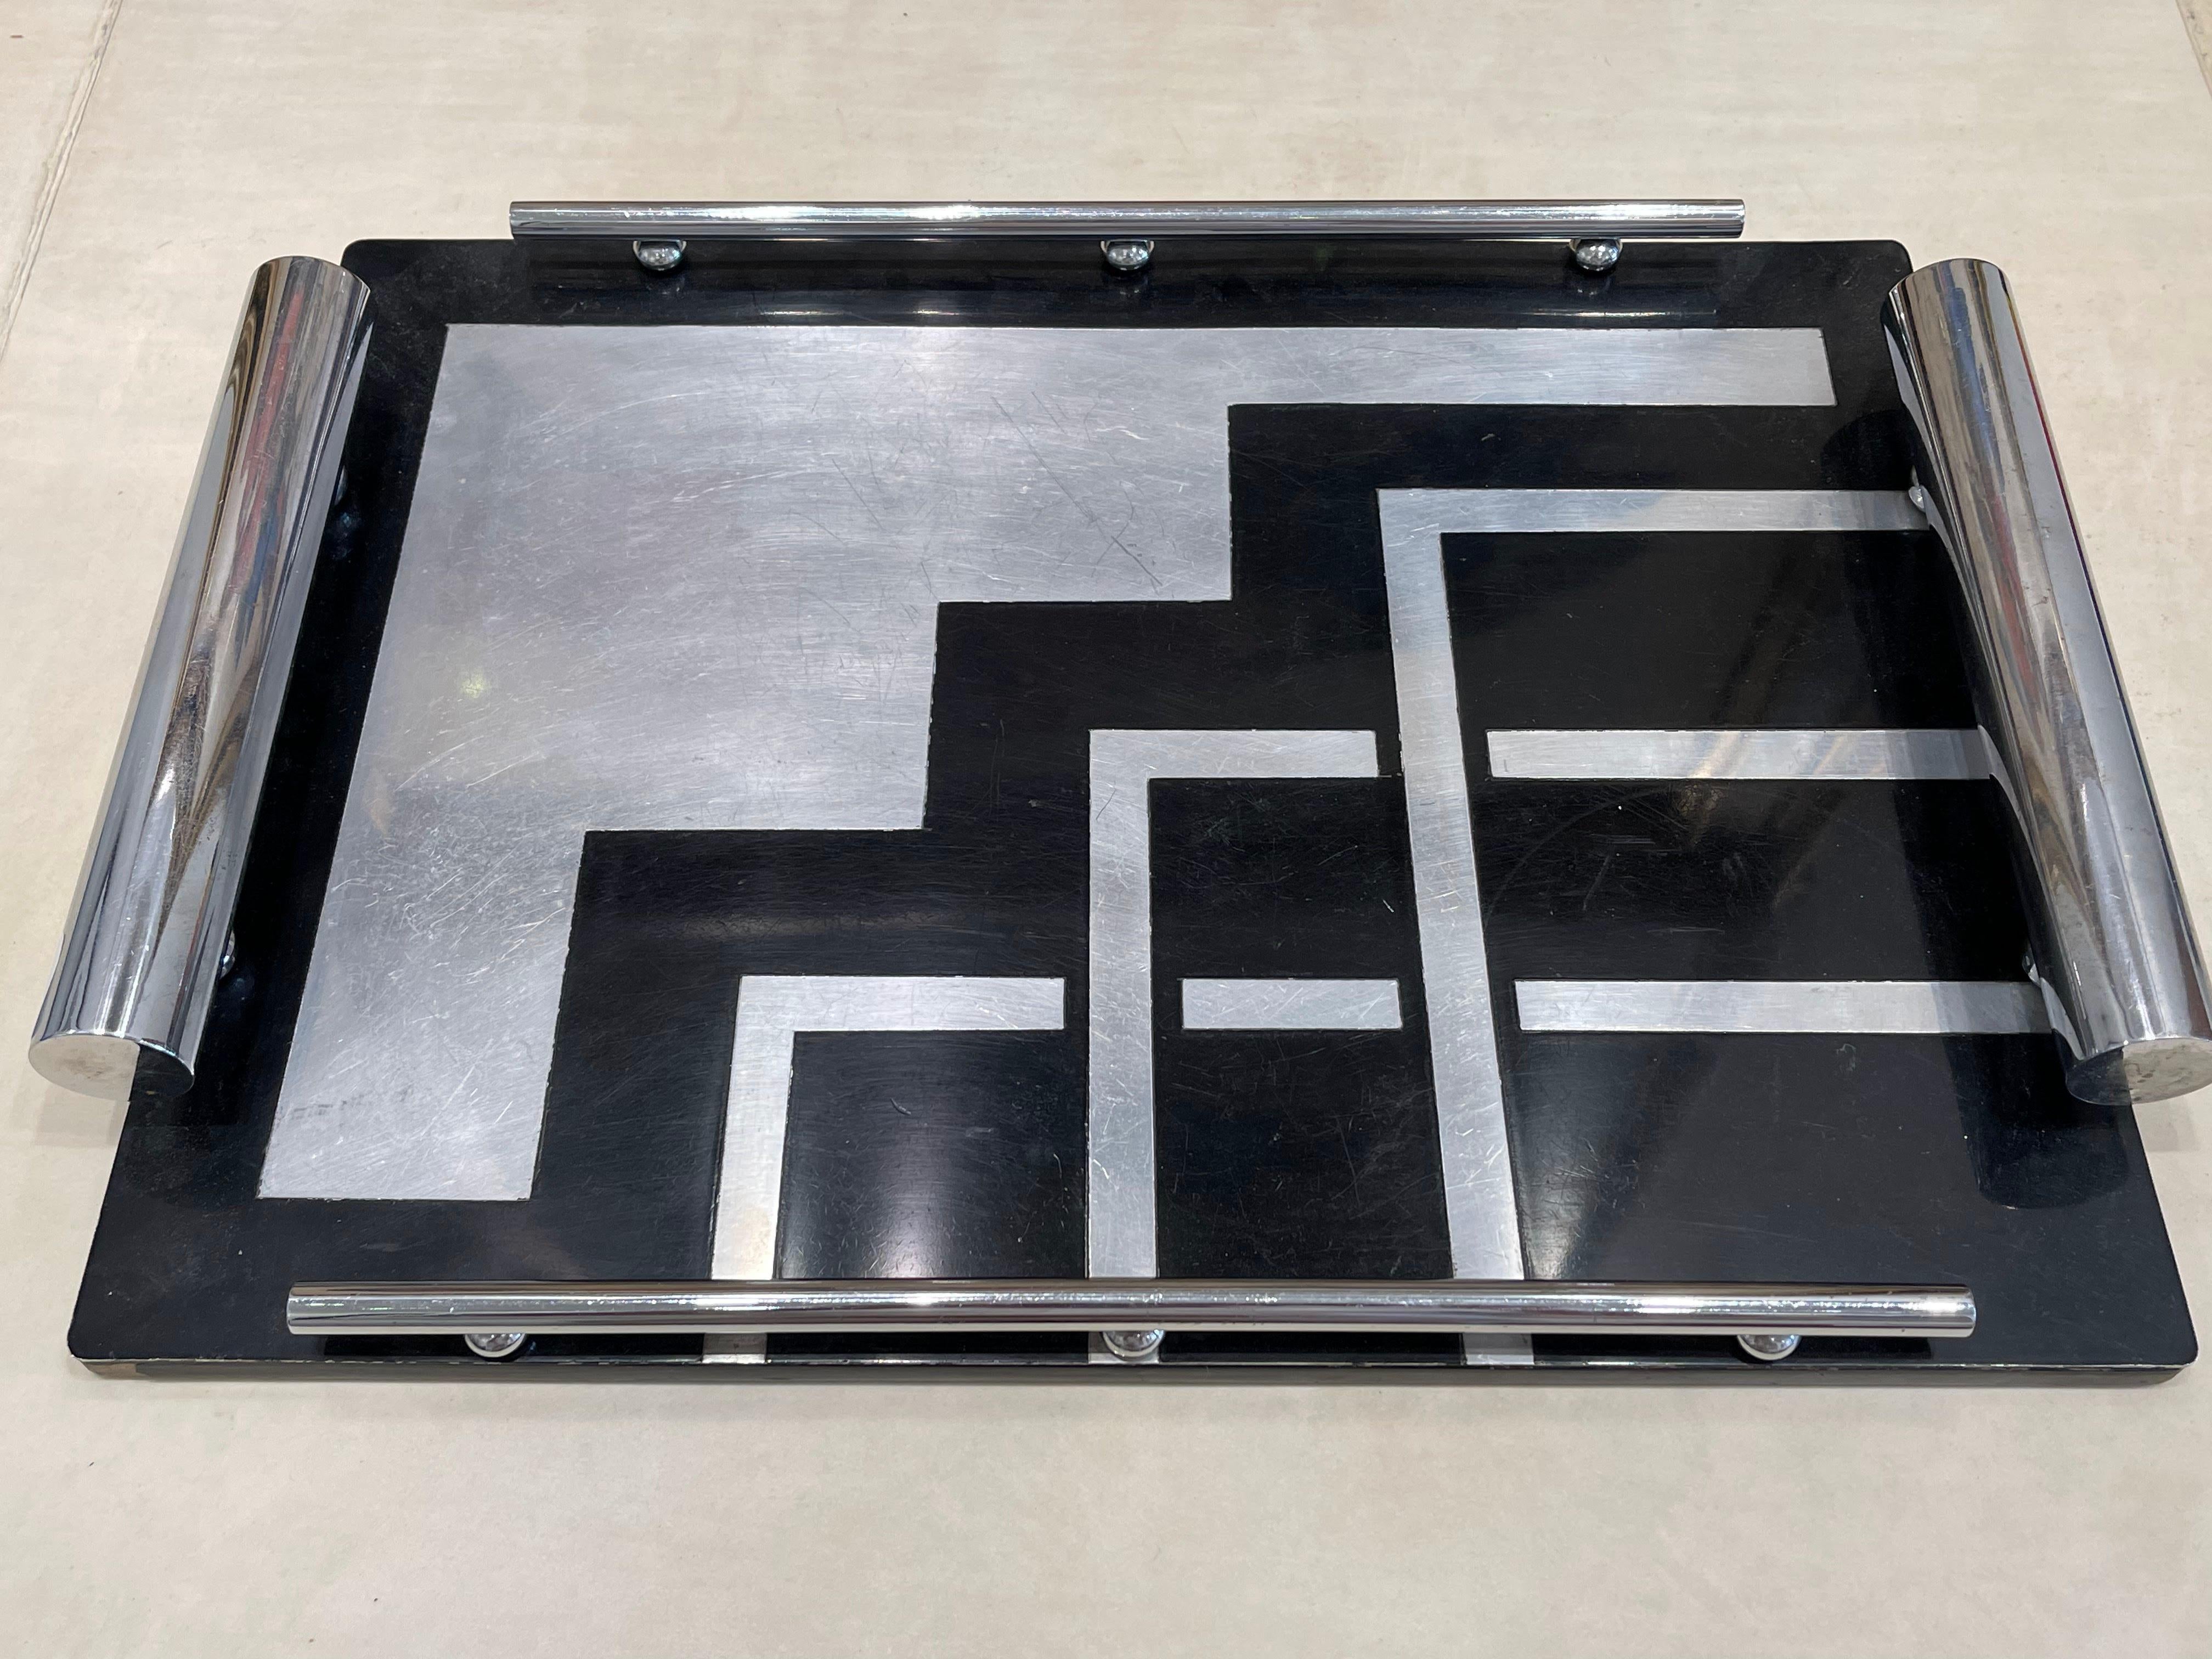 Ce plateau rectangulaire est orné de motifs géométriques dans le style typique du Bauhaus. Le motif est asymétrique avec des motifs réguliers, les lignes sont nettes et simples. Ce plateau date des années 1930.

Le plateau est en bois laqué noir,